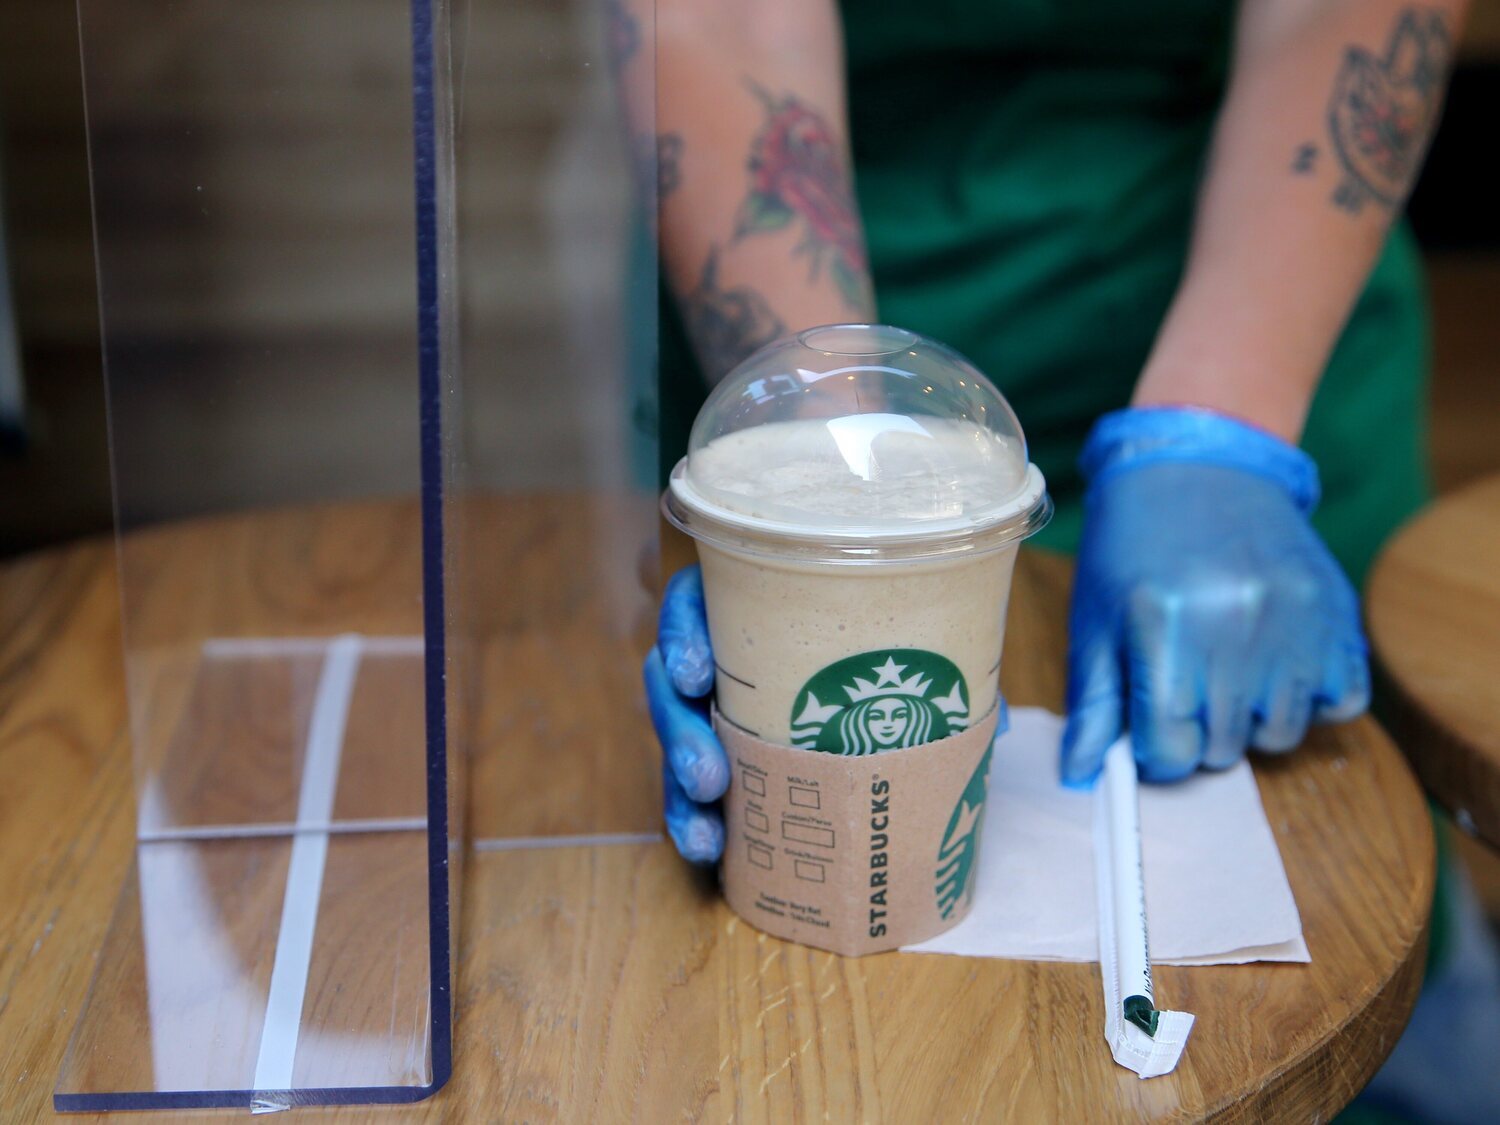 El mensaje en un vaso de Starbucks con el que un empleado ayudó a una chica que vio en riesgo